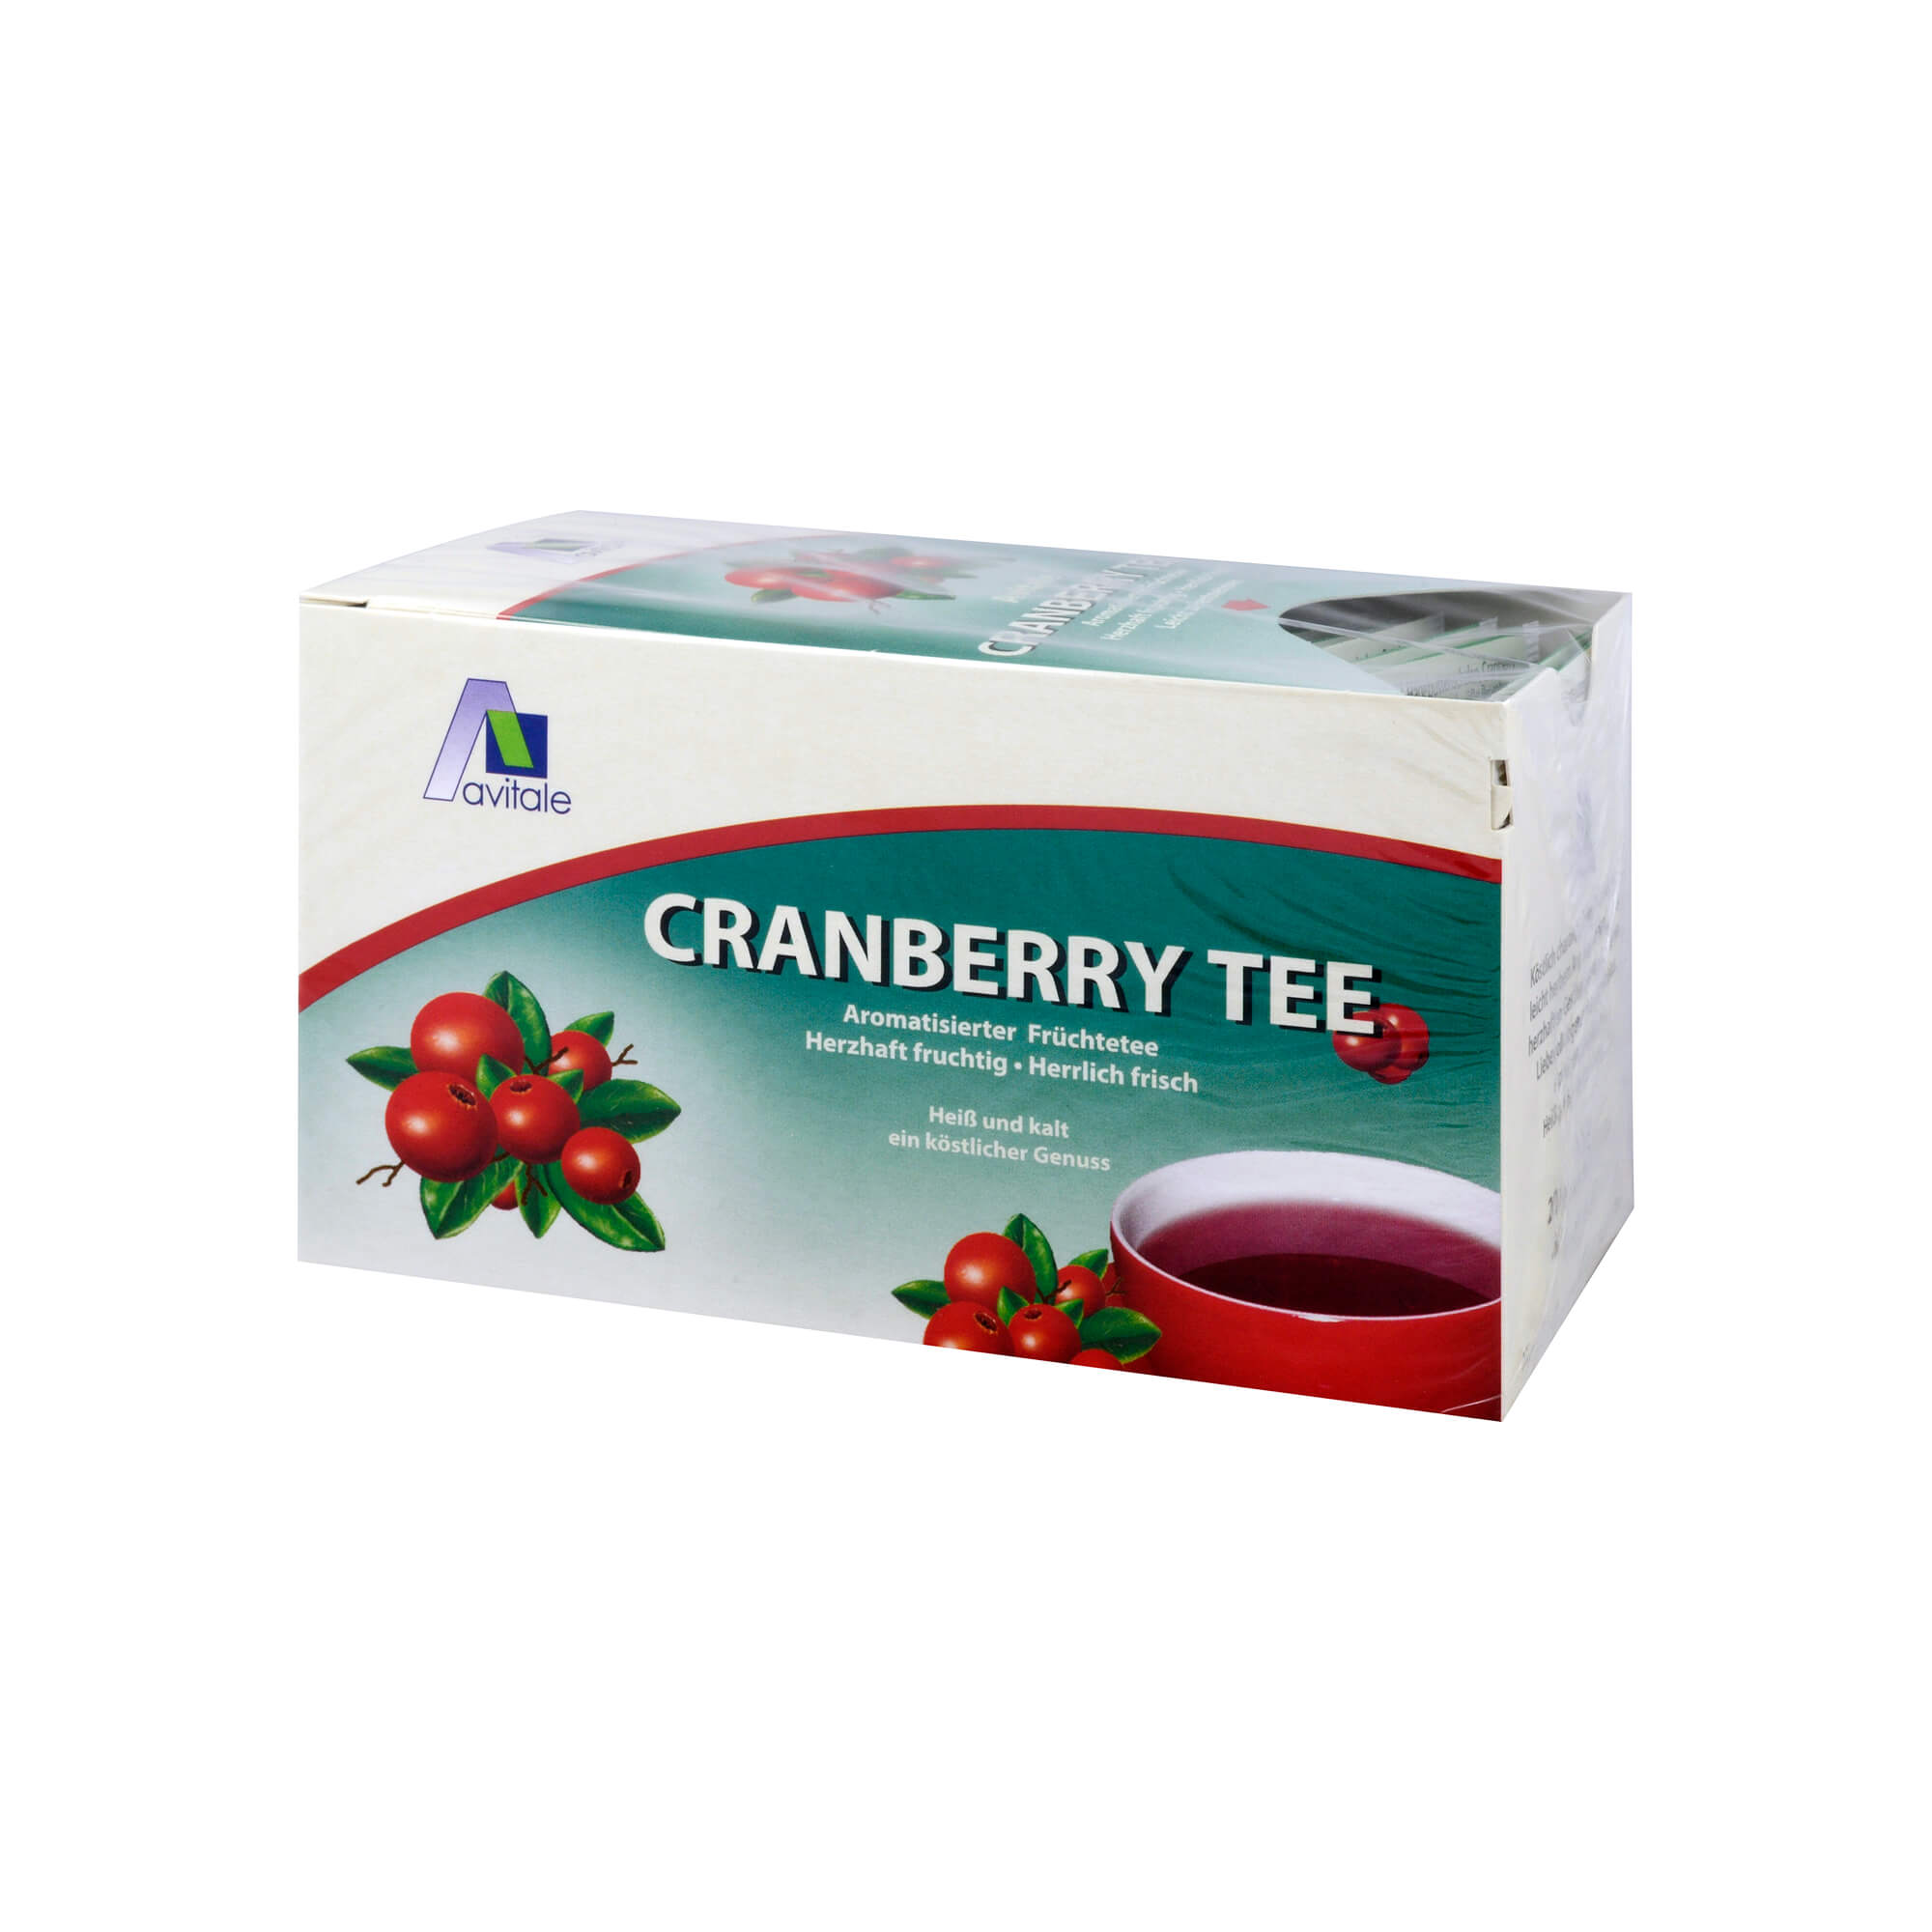 Aromatisierter Früchtetee mit dem Geschmack frischer Cranberries.